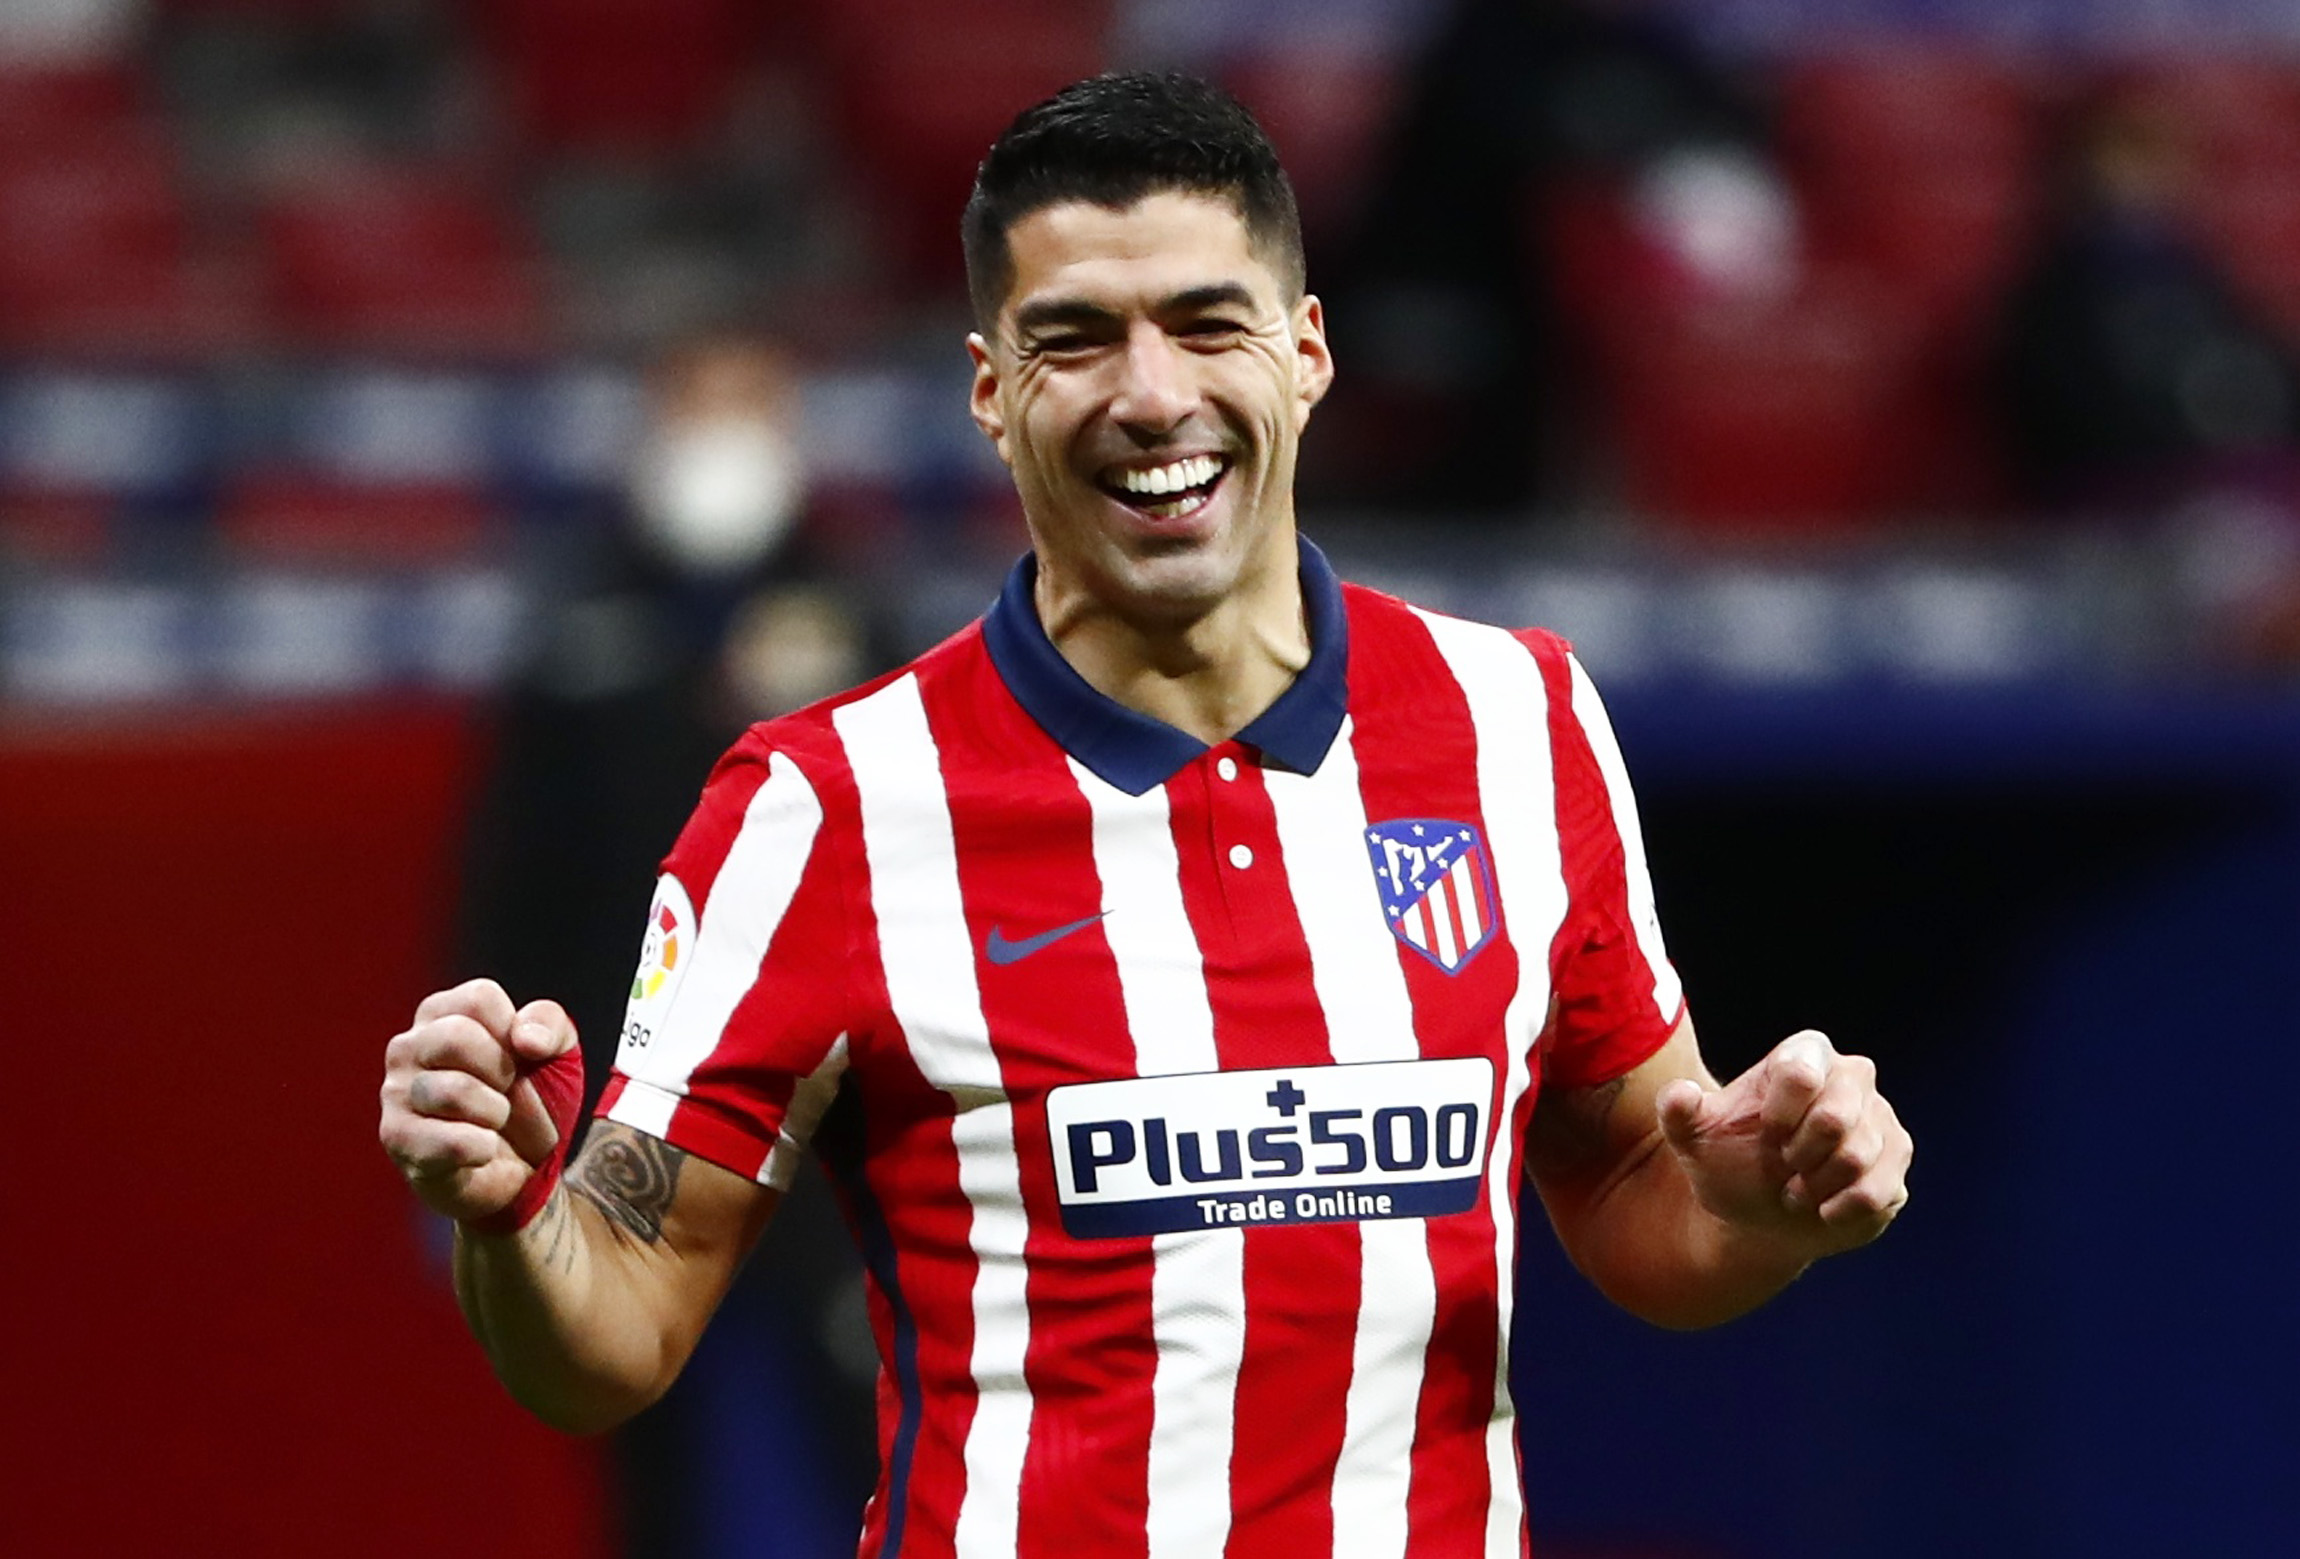 En el Atlético de Madrid, Luis Suárez ha recuperado su nivel (Reuetrs)